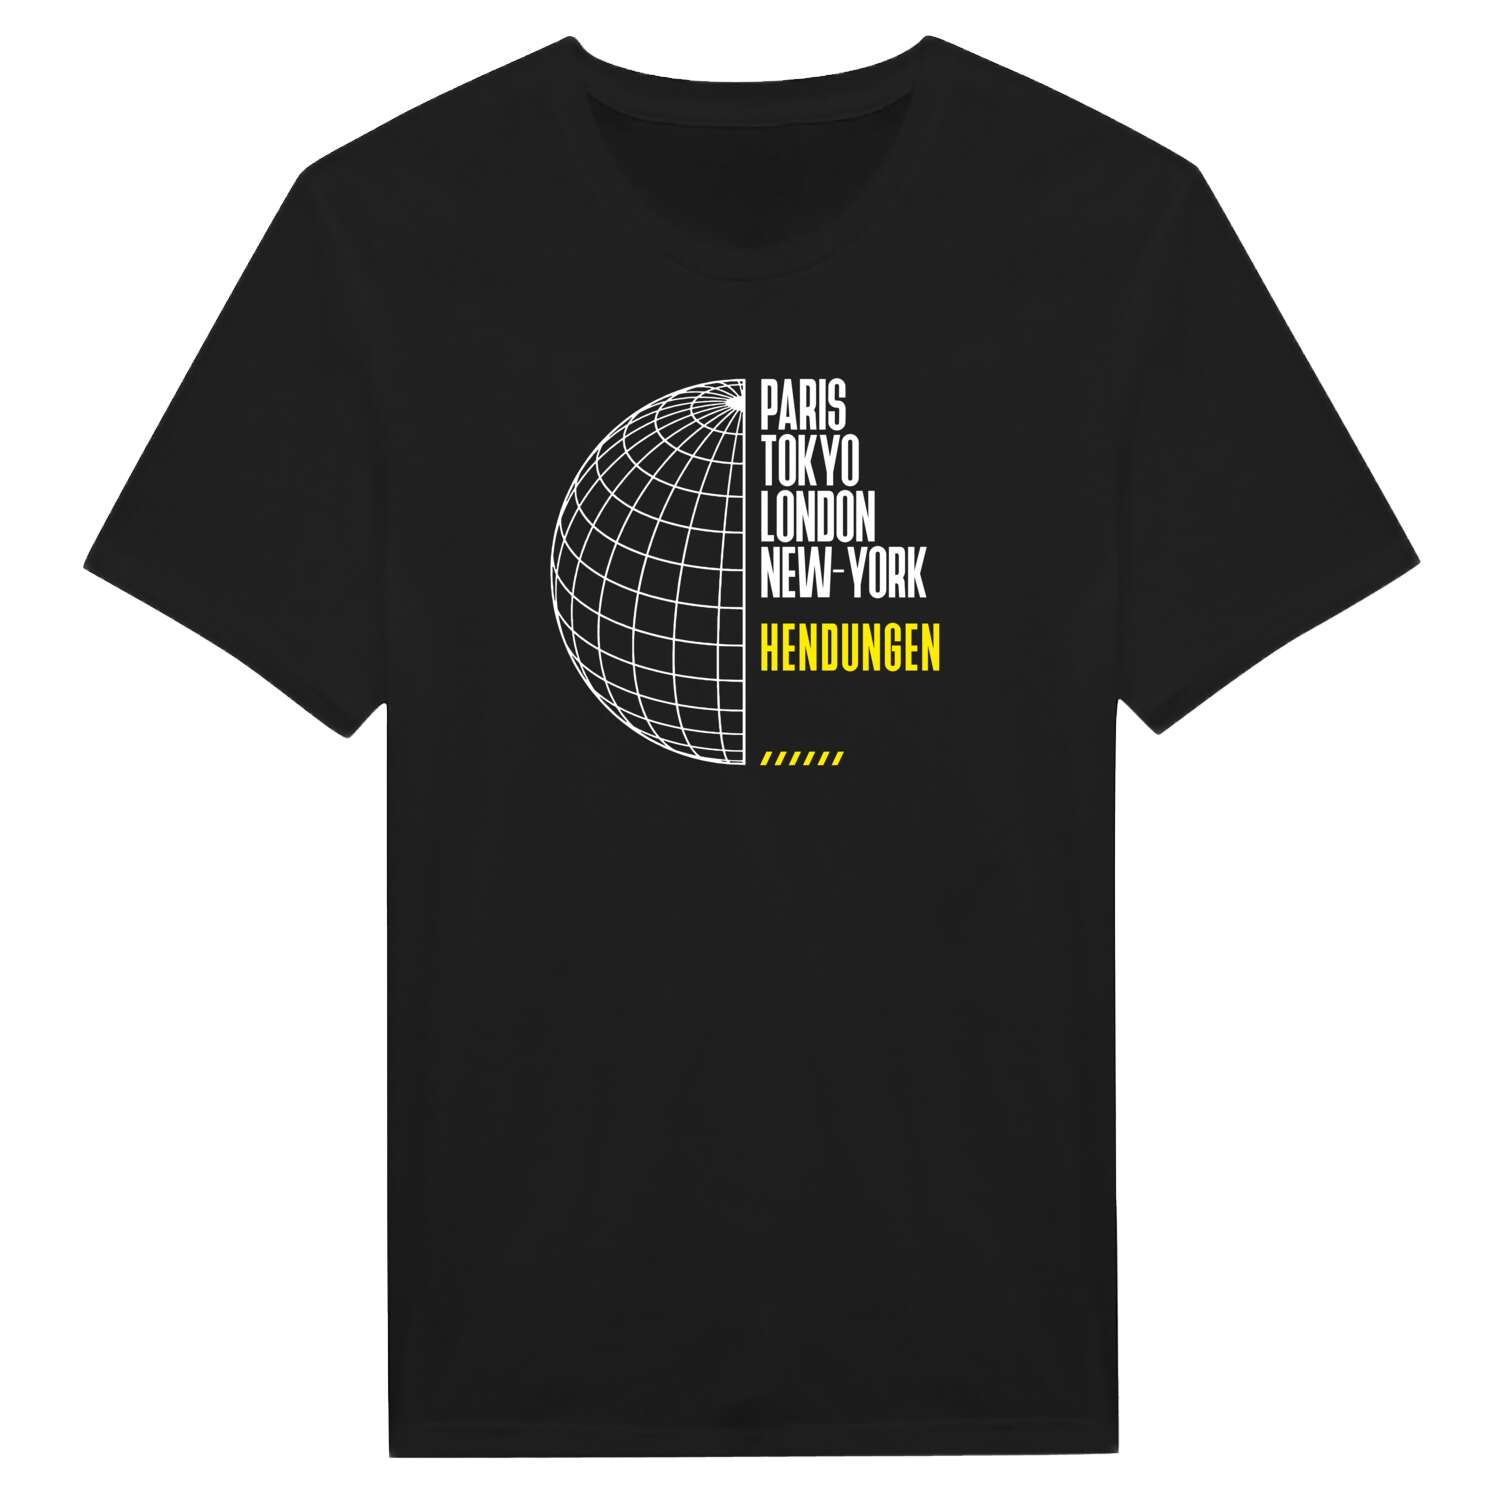 Hendungen T-Shirt »Paris Tokyo London«